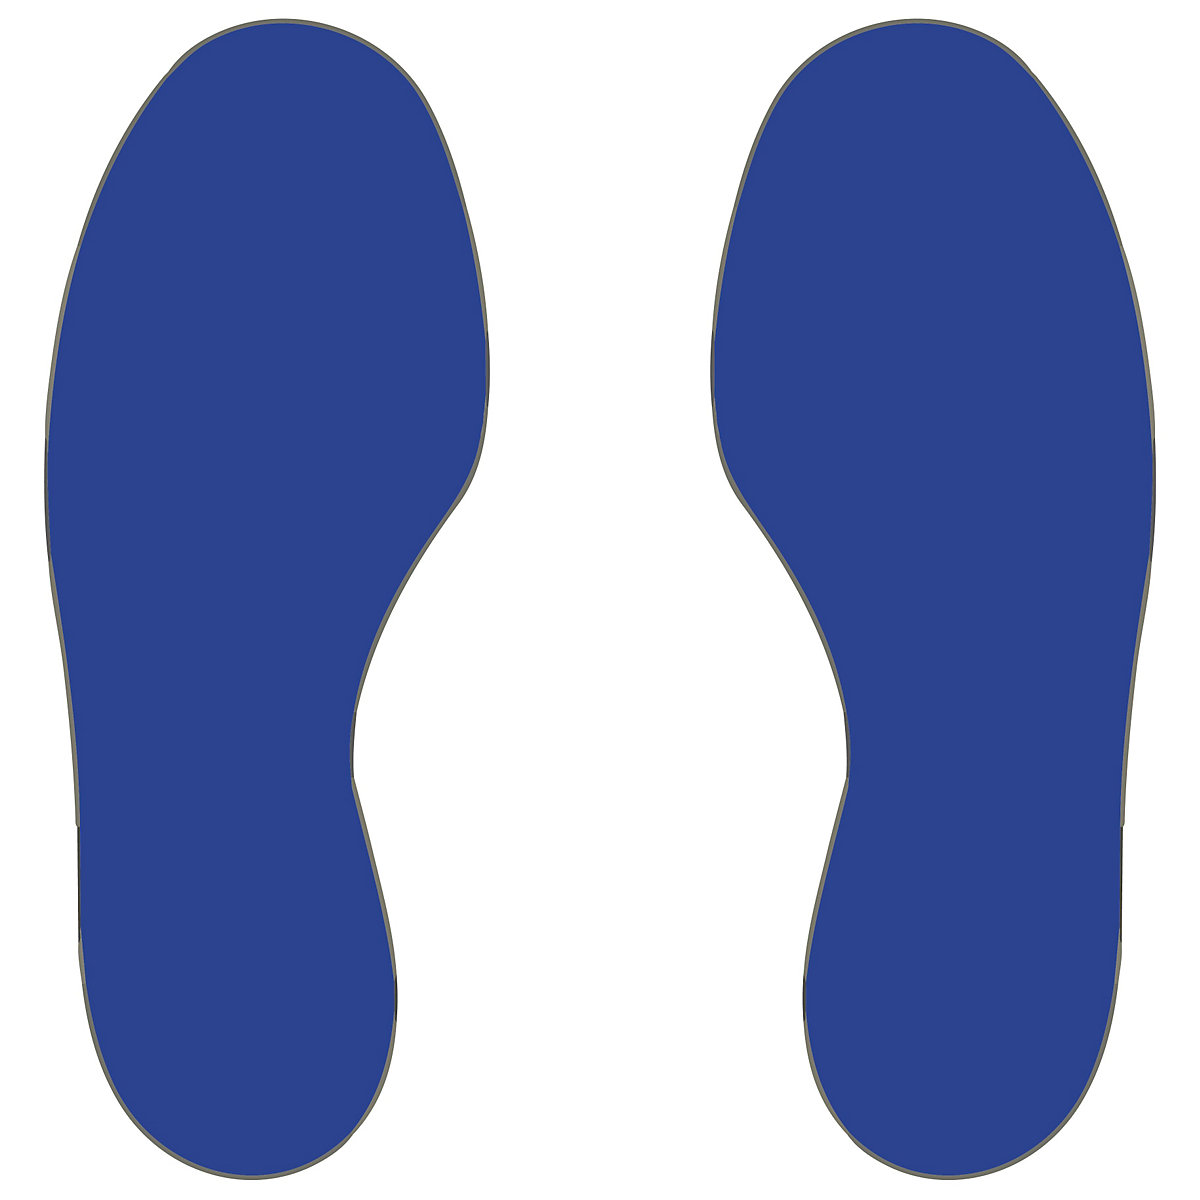 PVC padlójelölések, lábak, 25 jobb / 25 bal láb, cs. e. 50 db, kék